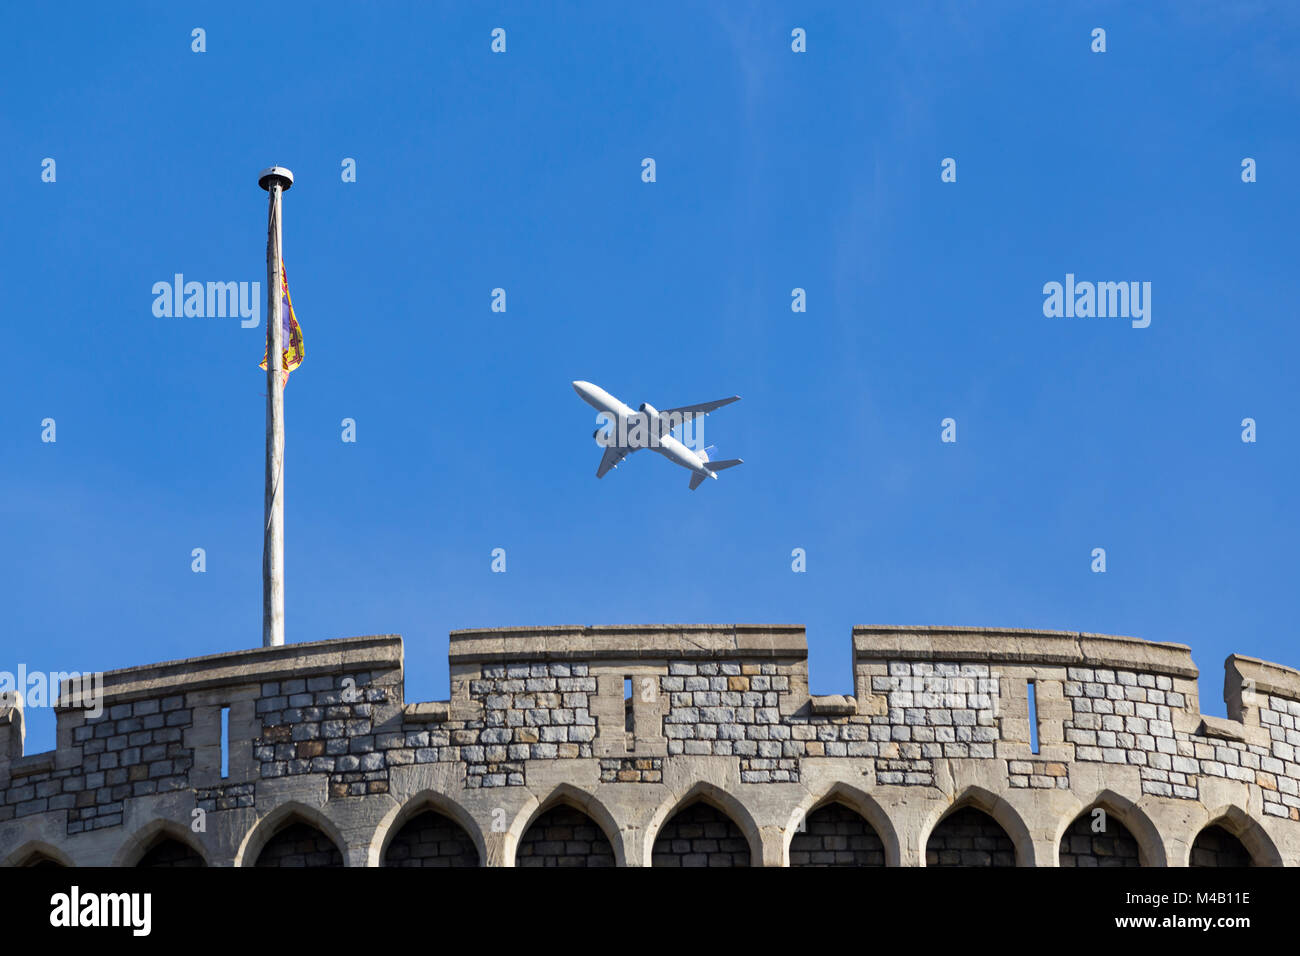 Avion / avion / avion / vol de l'aéroport d'Heathrow sur la tour ronde du château de Windsor, escalade après le décollage, & drapeau Royal Standard Banque D'Images